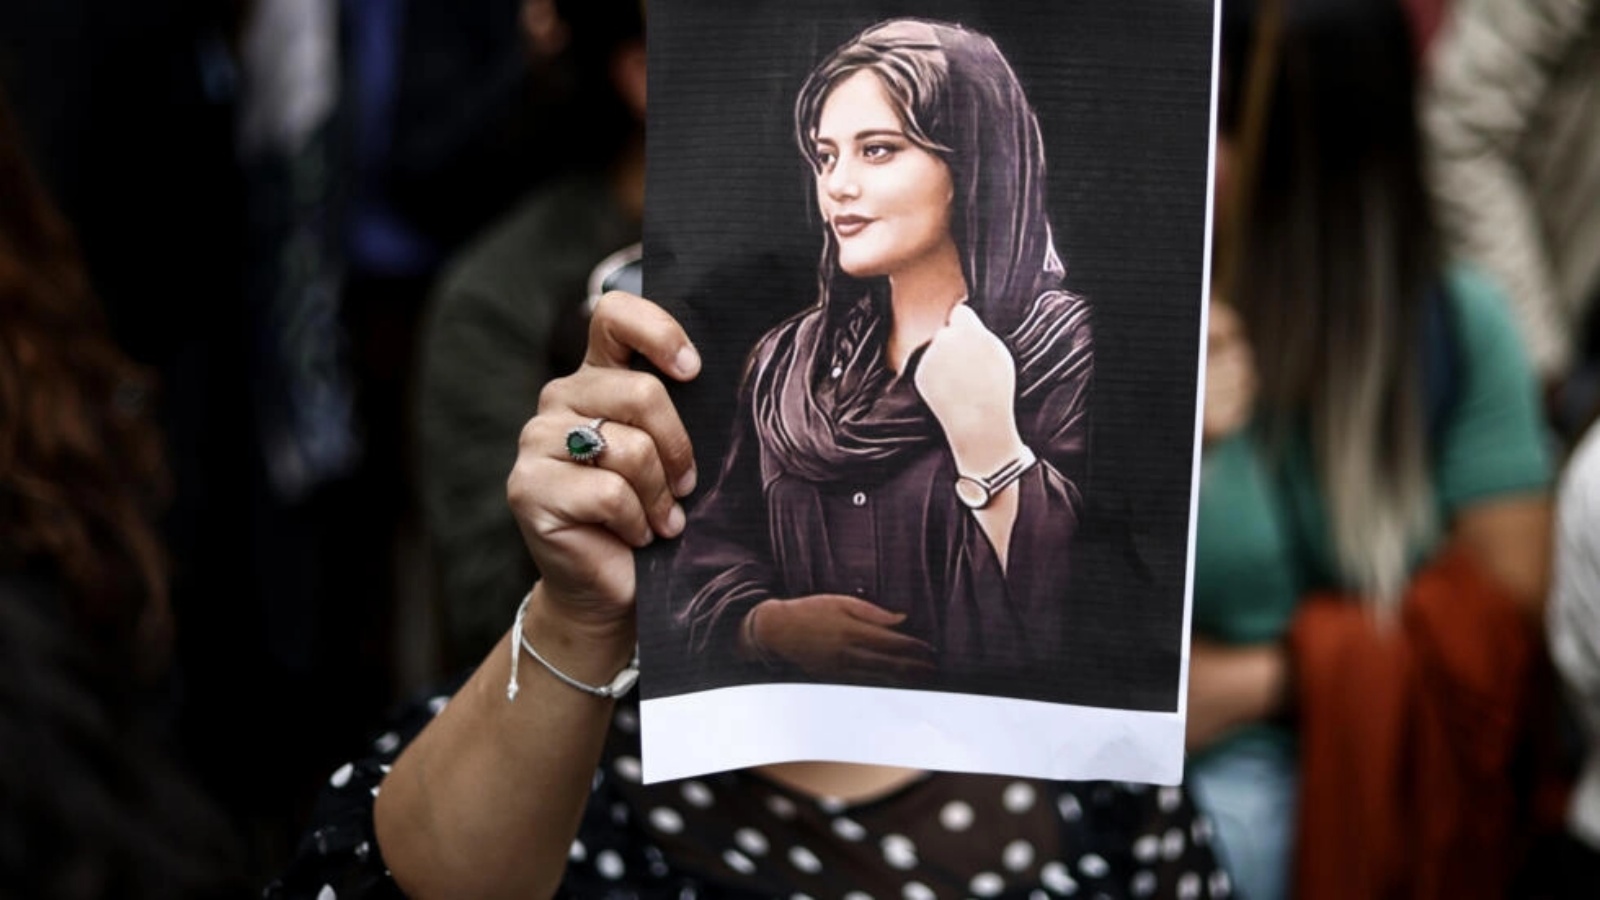 متظاهرة تحمل صورة الشابة مهسا أميني خلال تظاهرة دعم للحركة الاحتجاجية في إيران، في 23 سبتمبر 2022 في بروكسل 